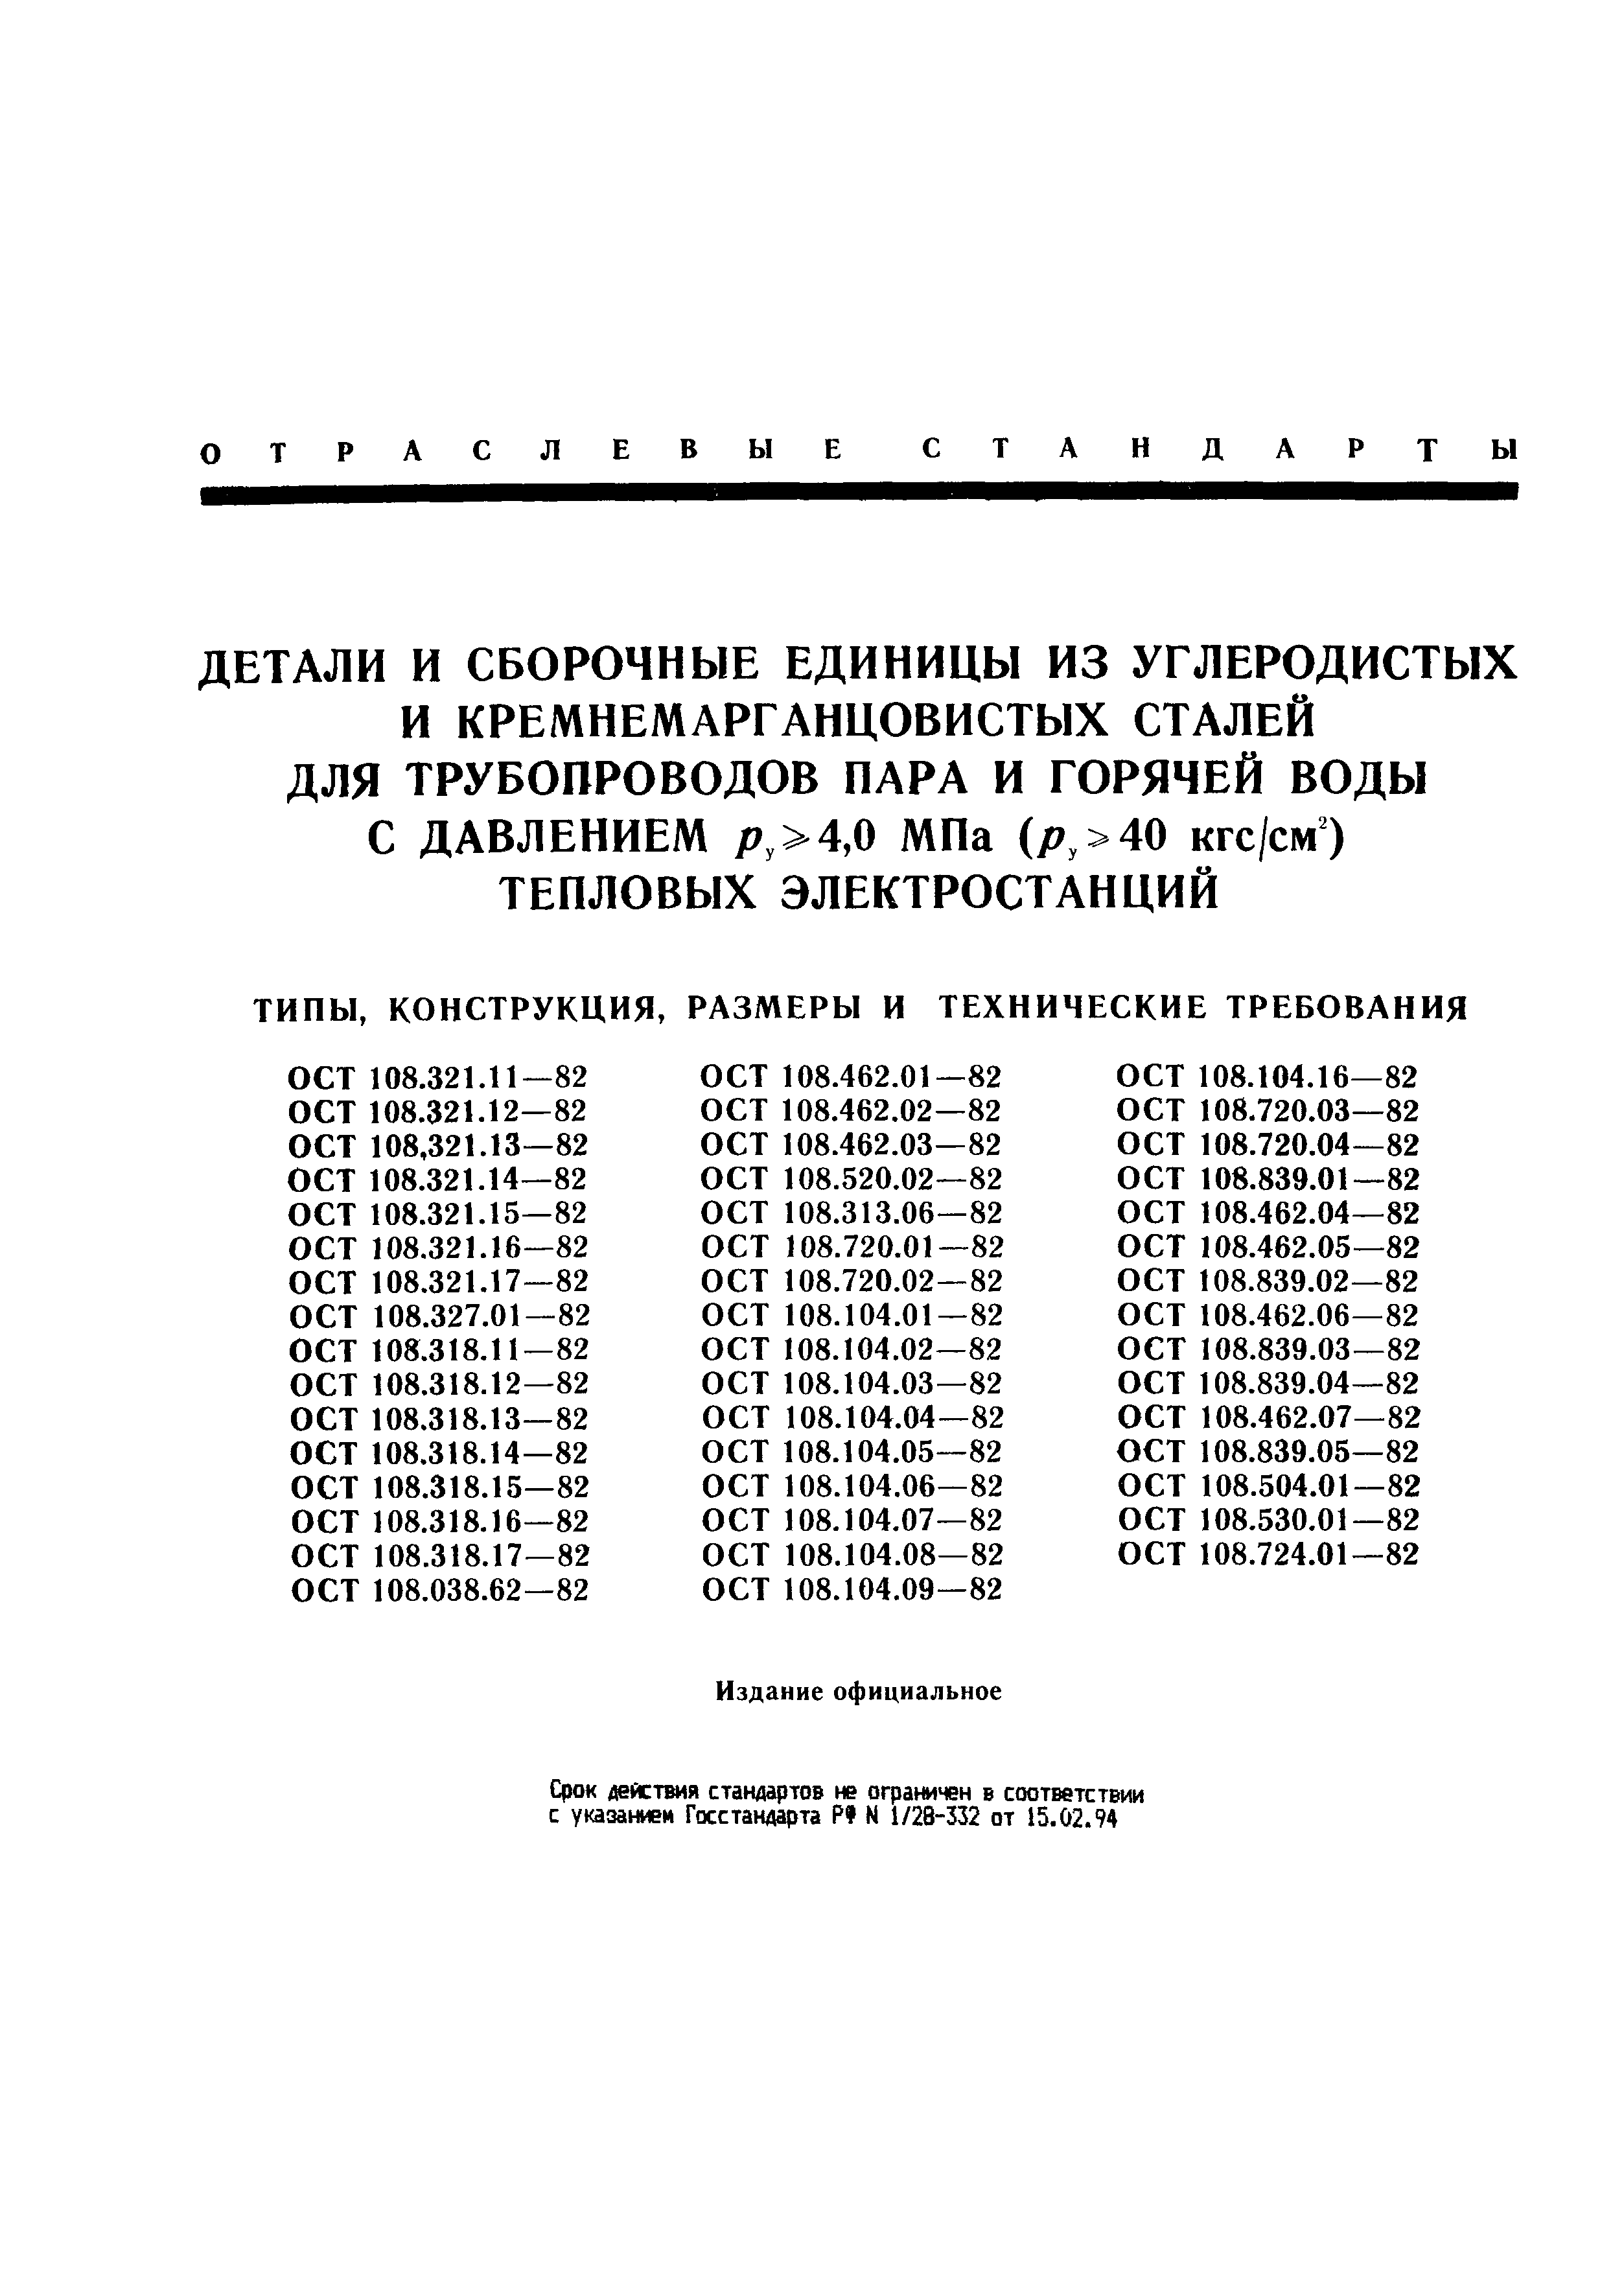 ОСТ 108.104.04-82